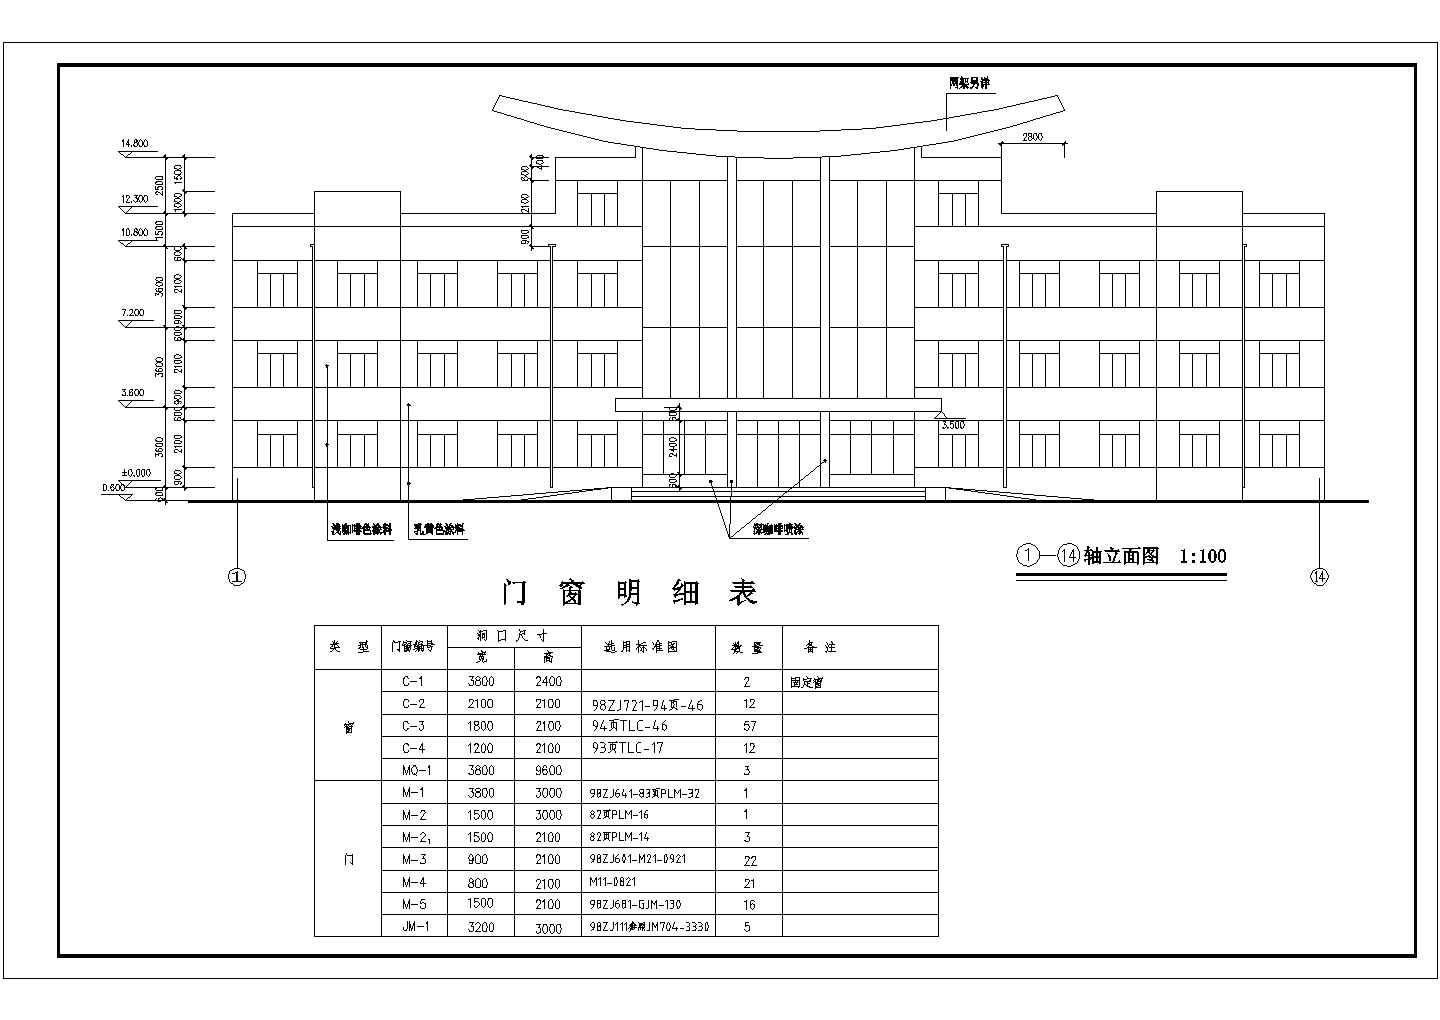 陕西省某城市四层钢铁办公楼设计图